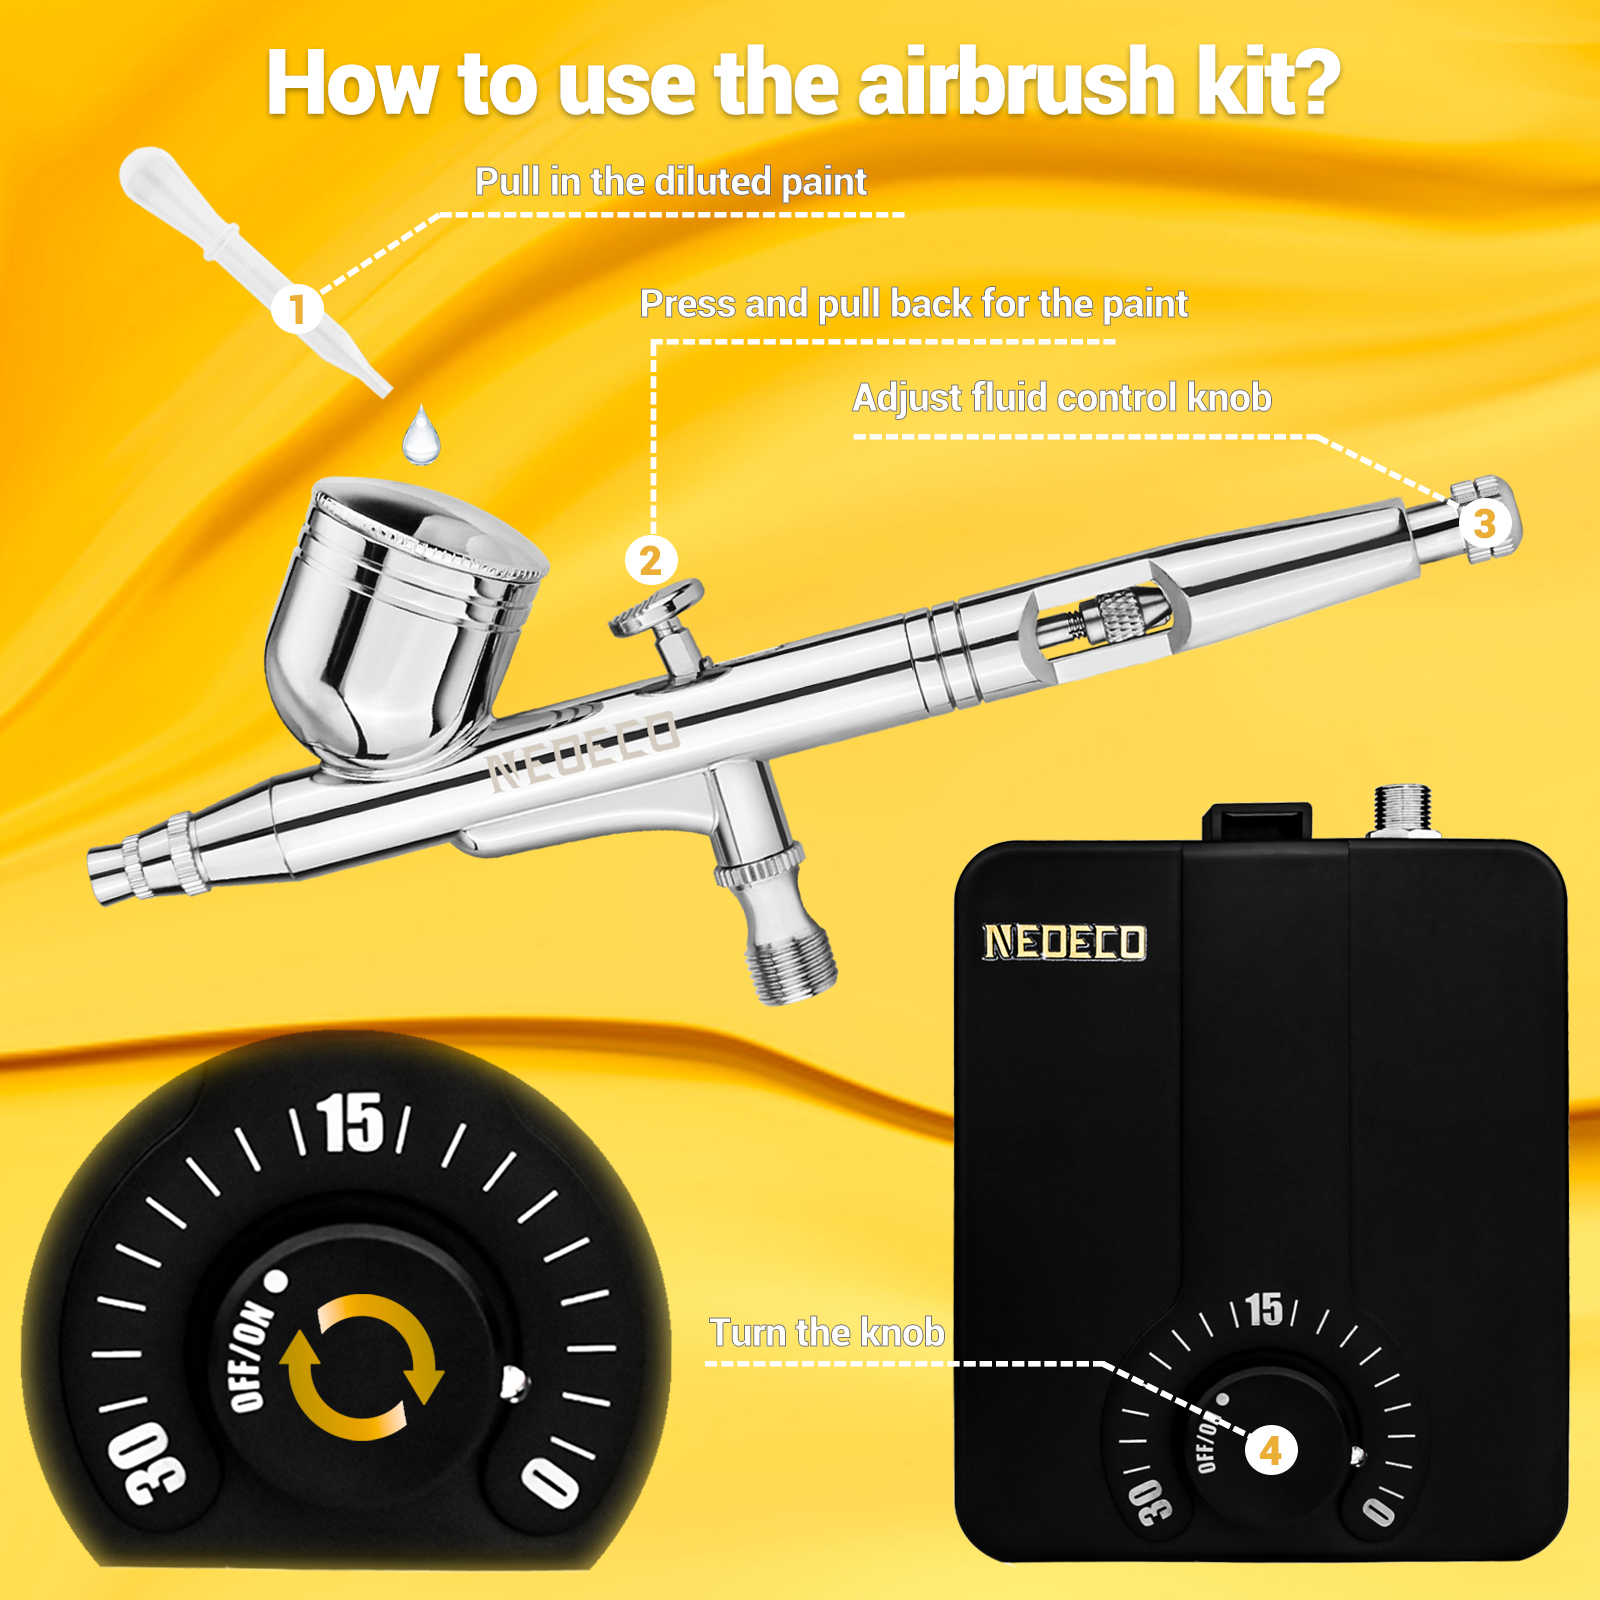 Airbrush and mini-compressor kit - Martellato